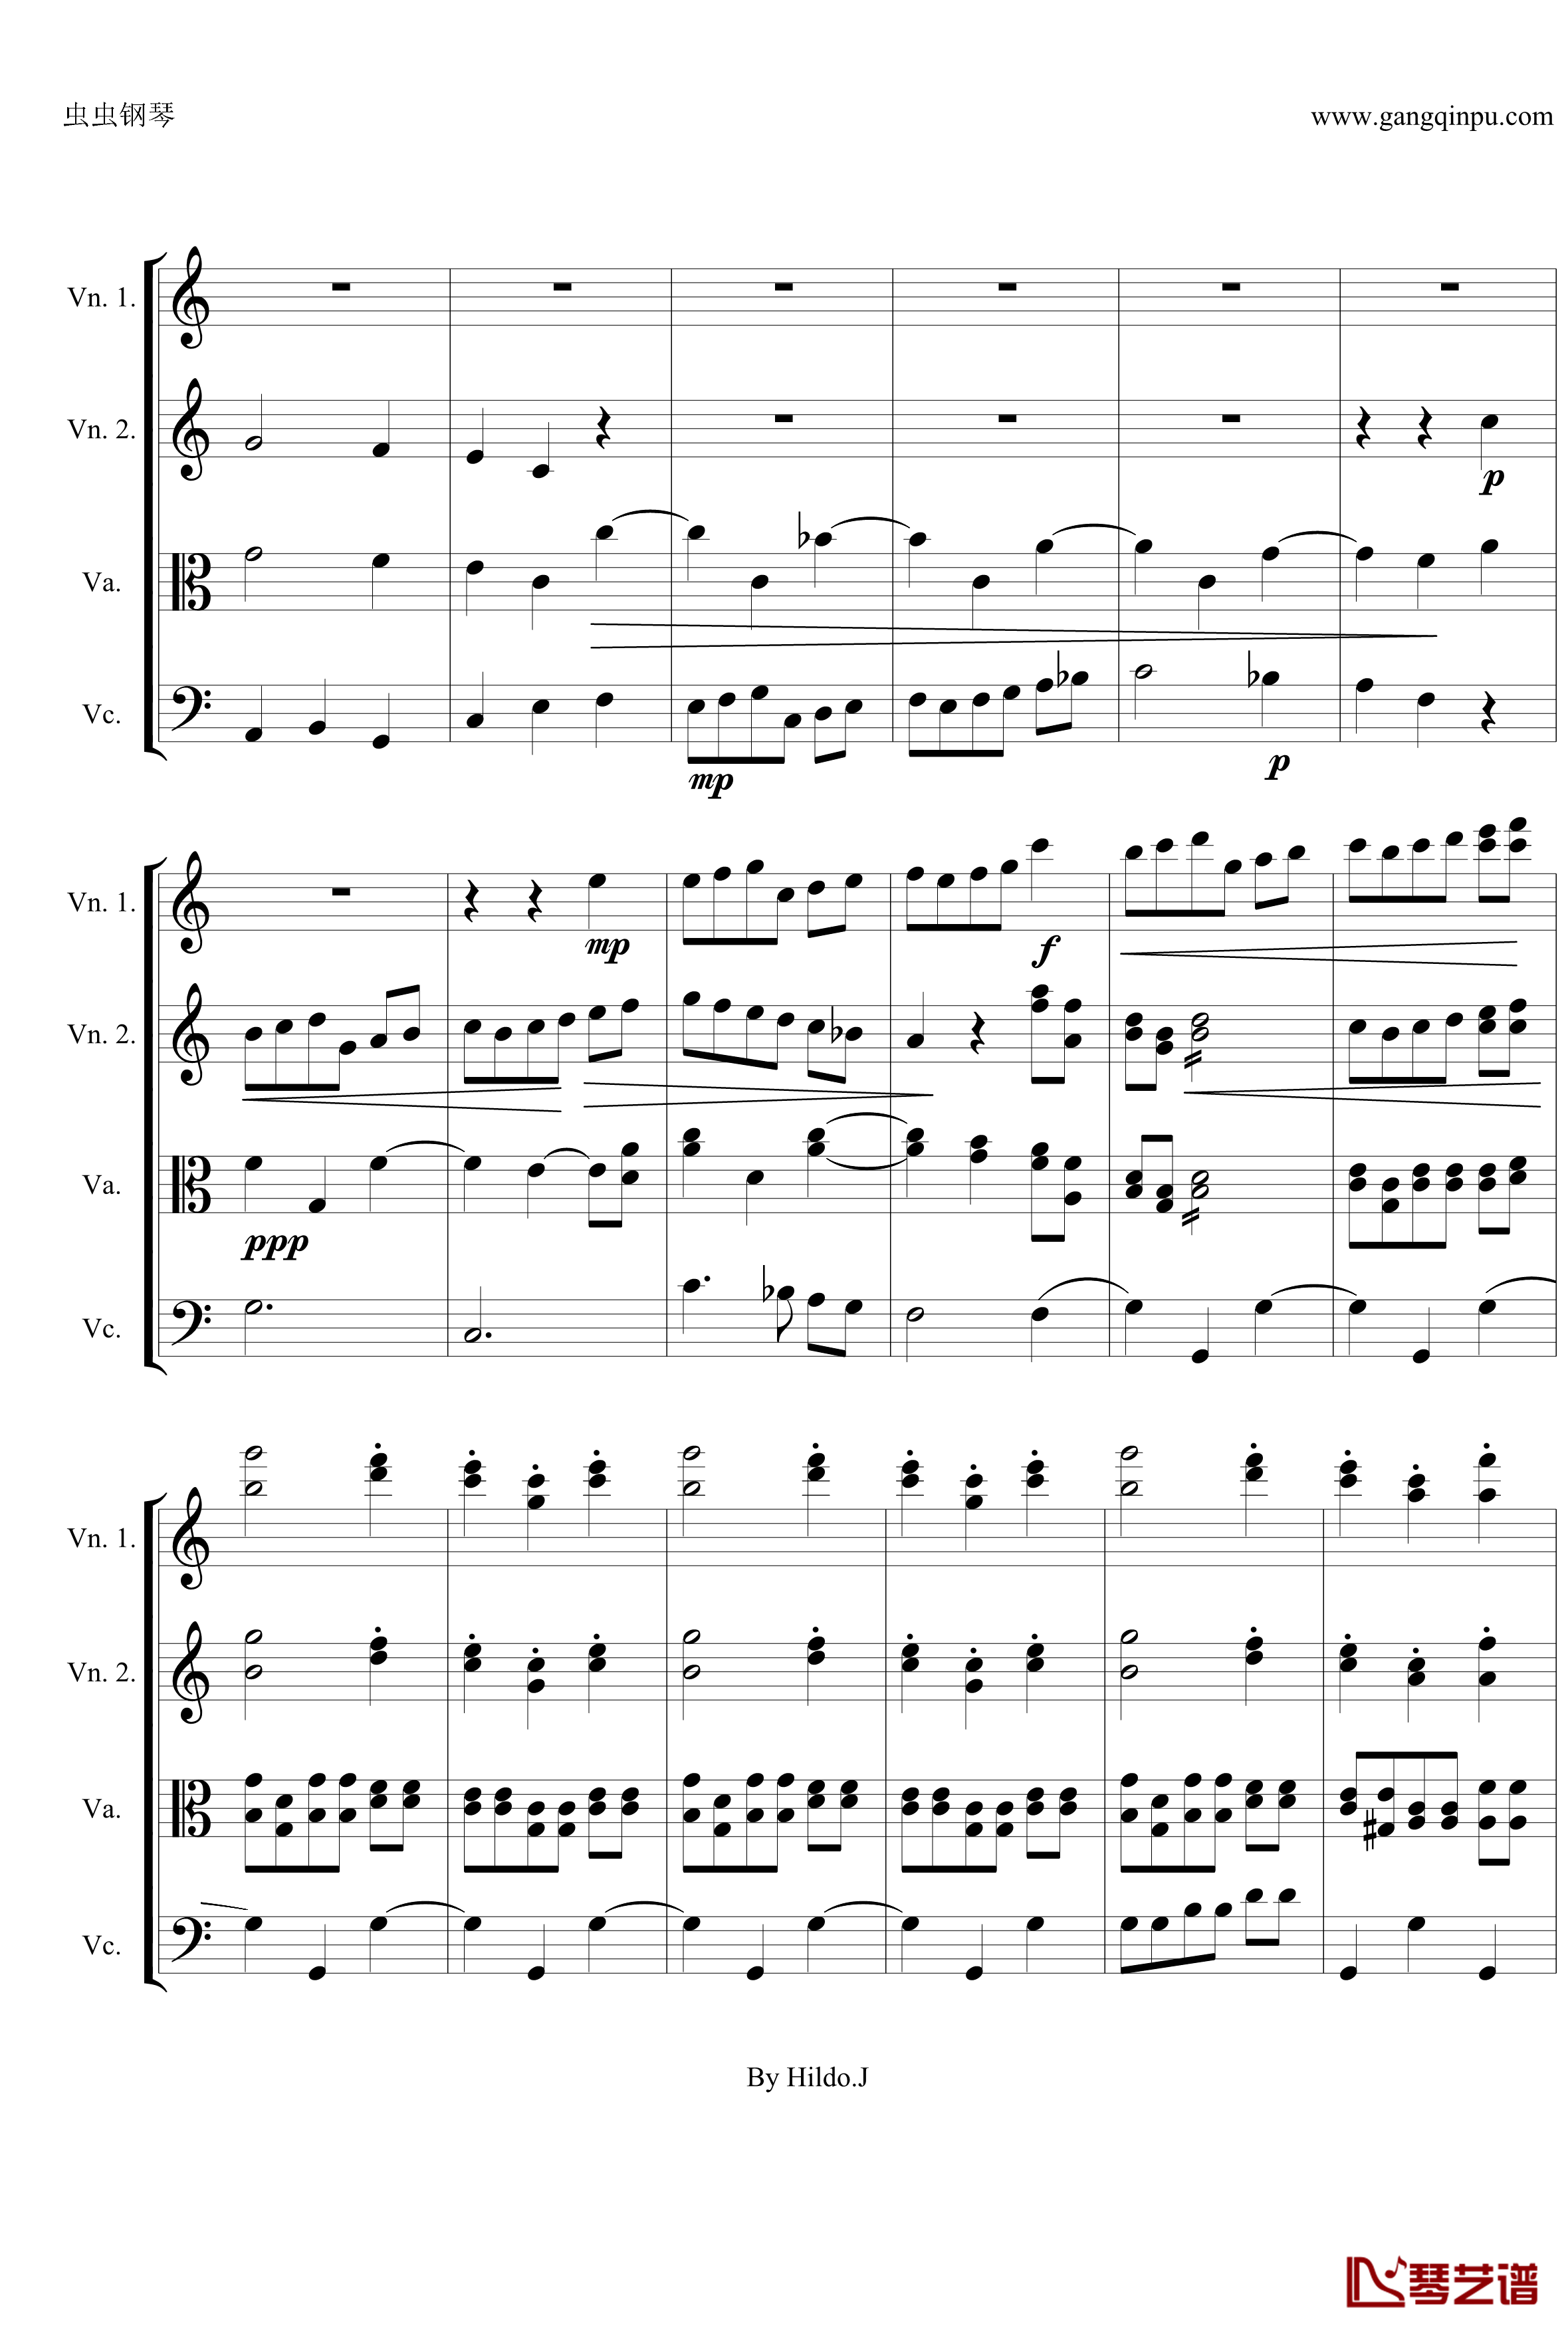 命运交响曲第三乐章钢琴谱-弦乐版-贝多芬-beethoven13